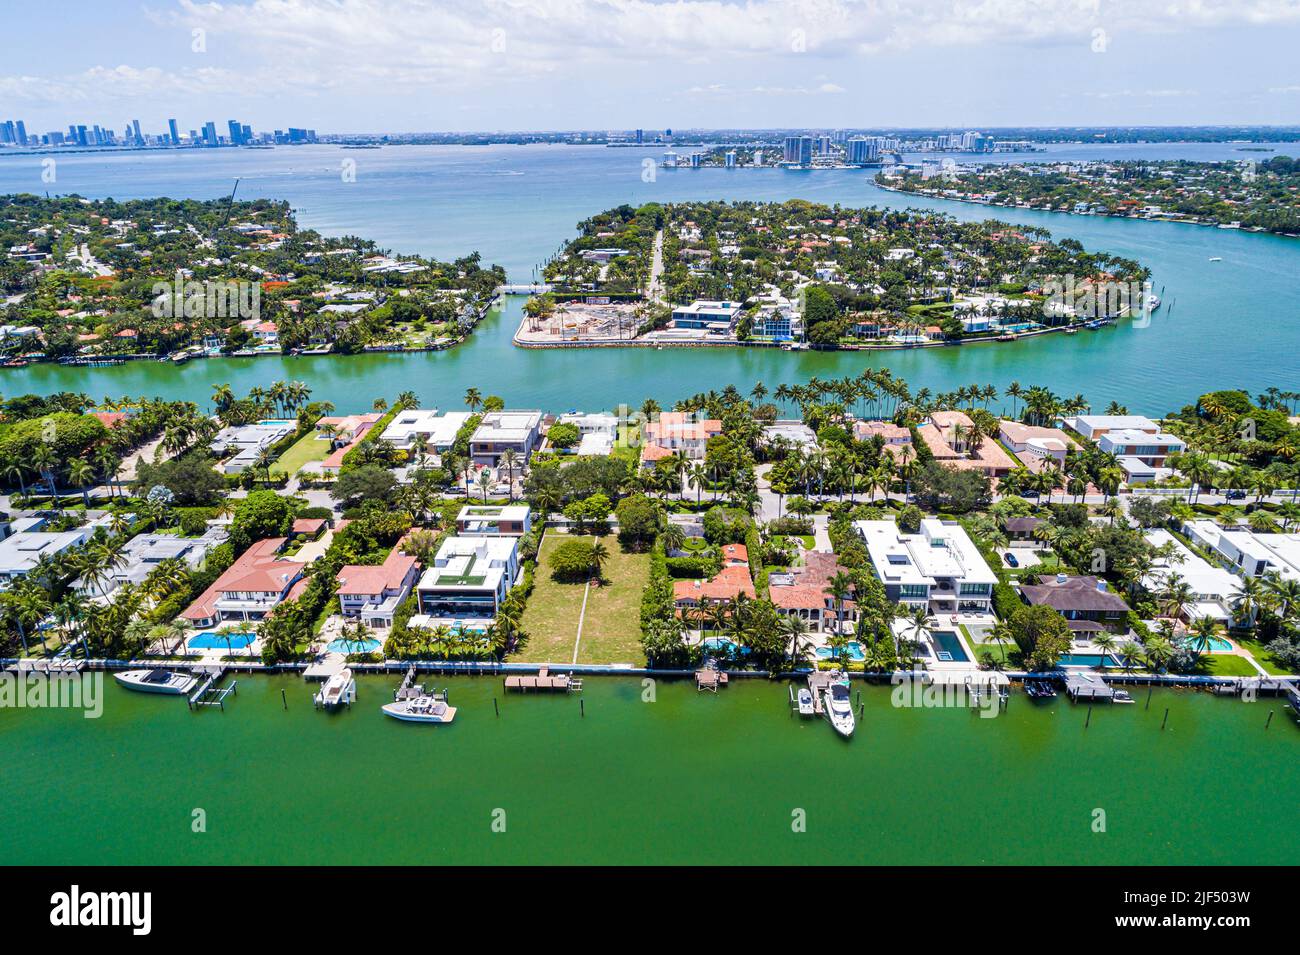 Miami Beach Florida, vista aérea desde arriba, Indian Creek Biscayne Bay Allison Island La Gorce Island horizonte de la ciudad, mansiones propiedades casas casa Foto de stock